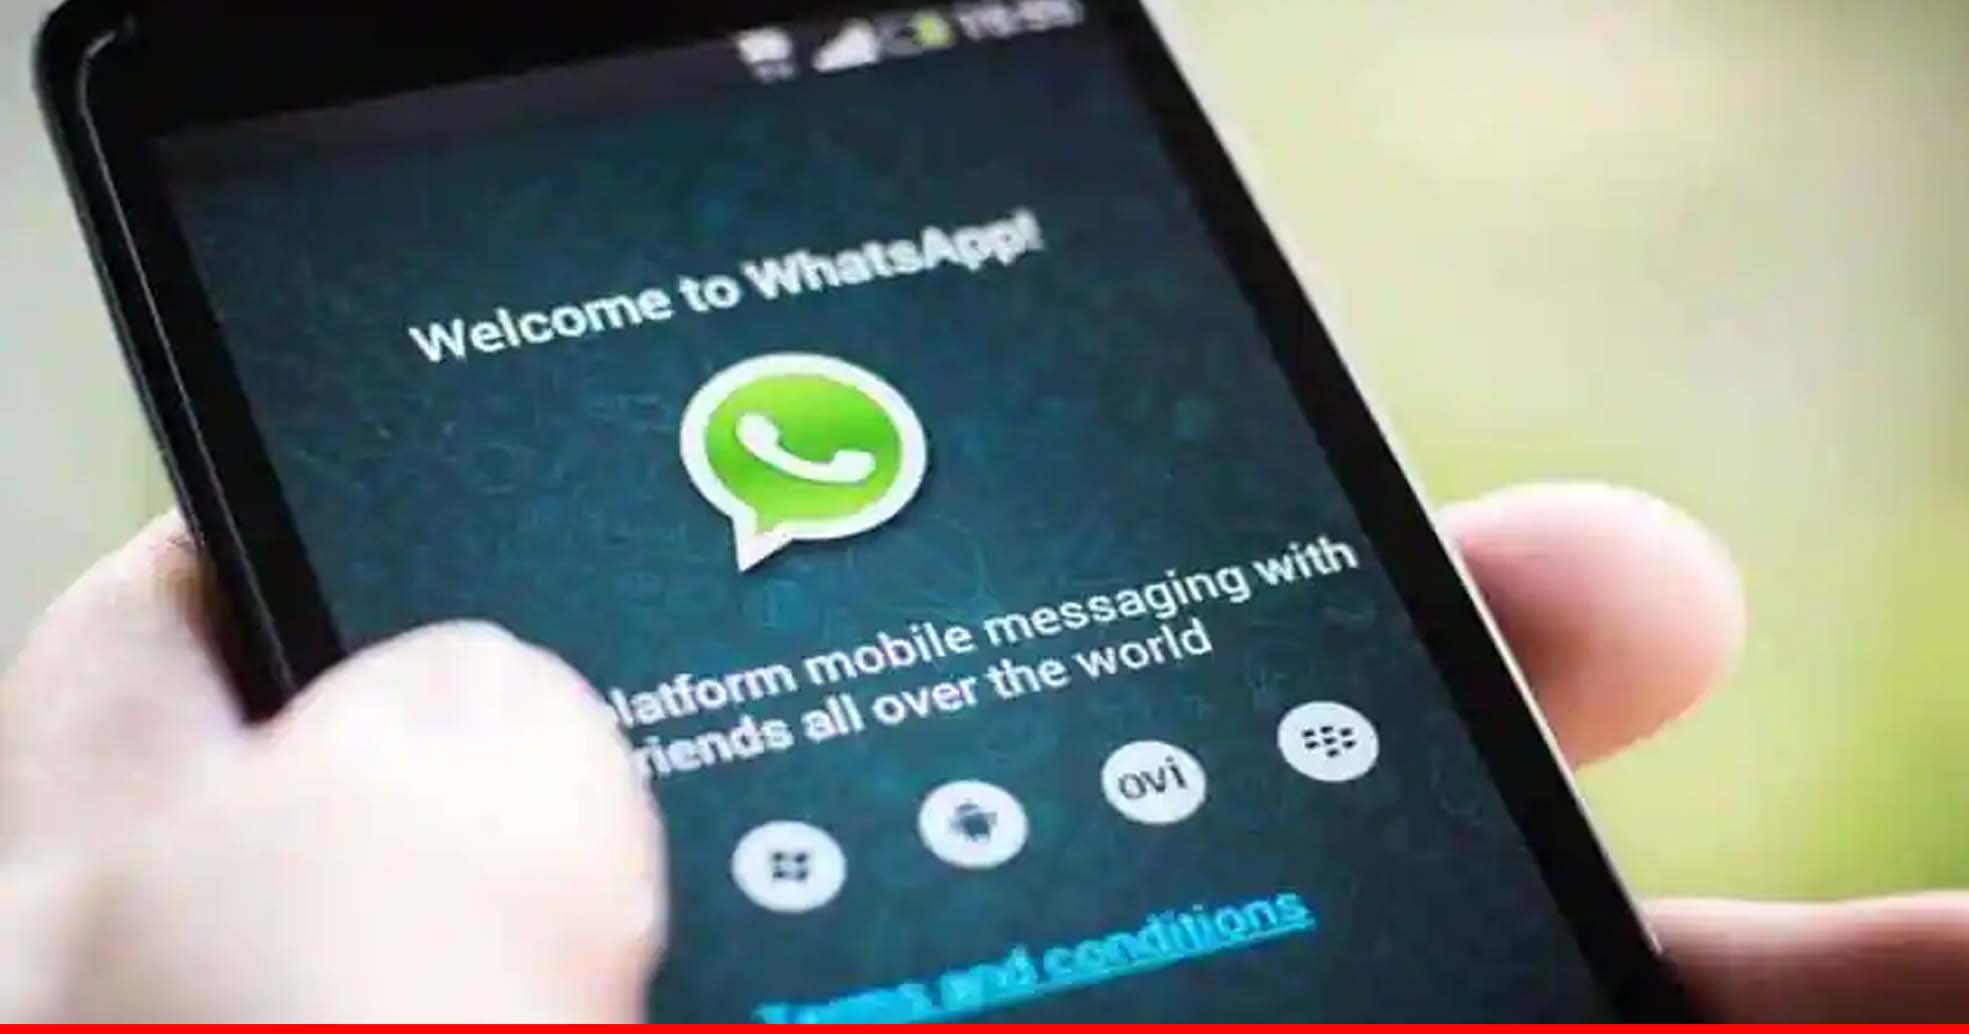 सरकार ने WhatsApp को नई प्राइवेसी पॉलिसी वापस लेने का दिया निर्देश